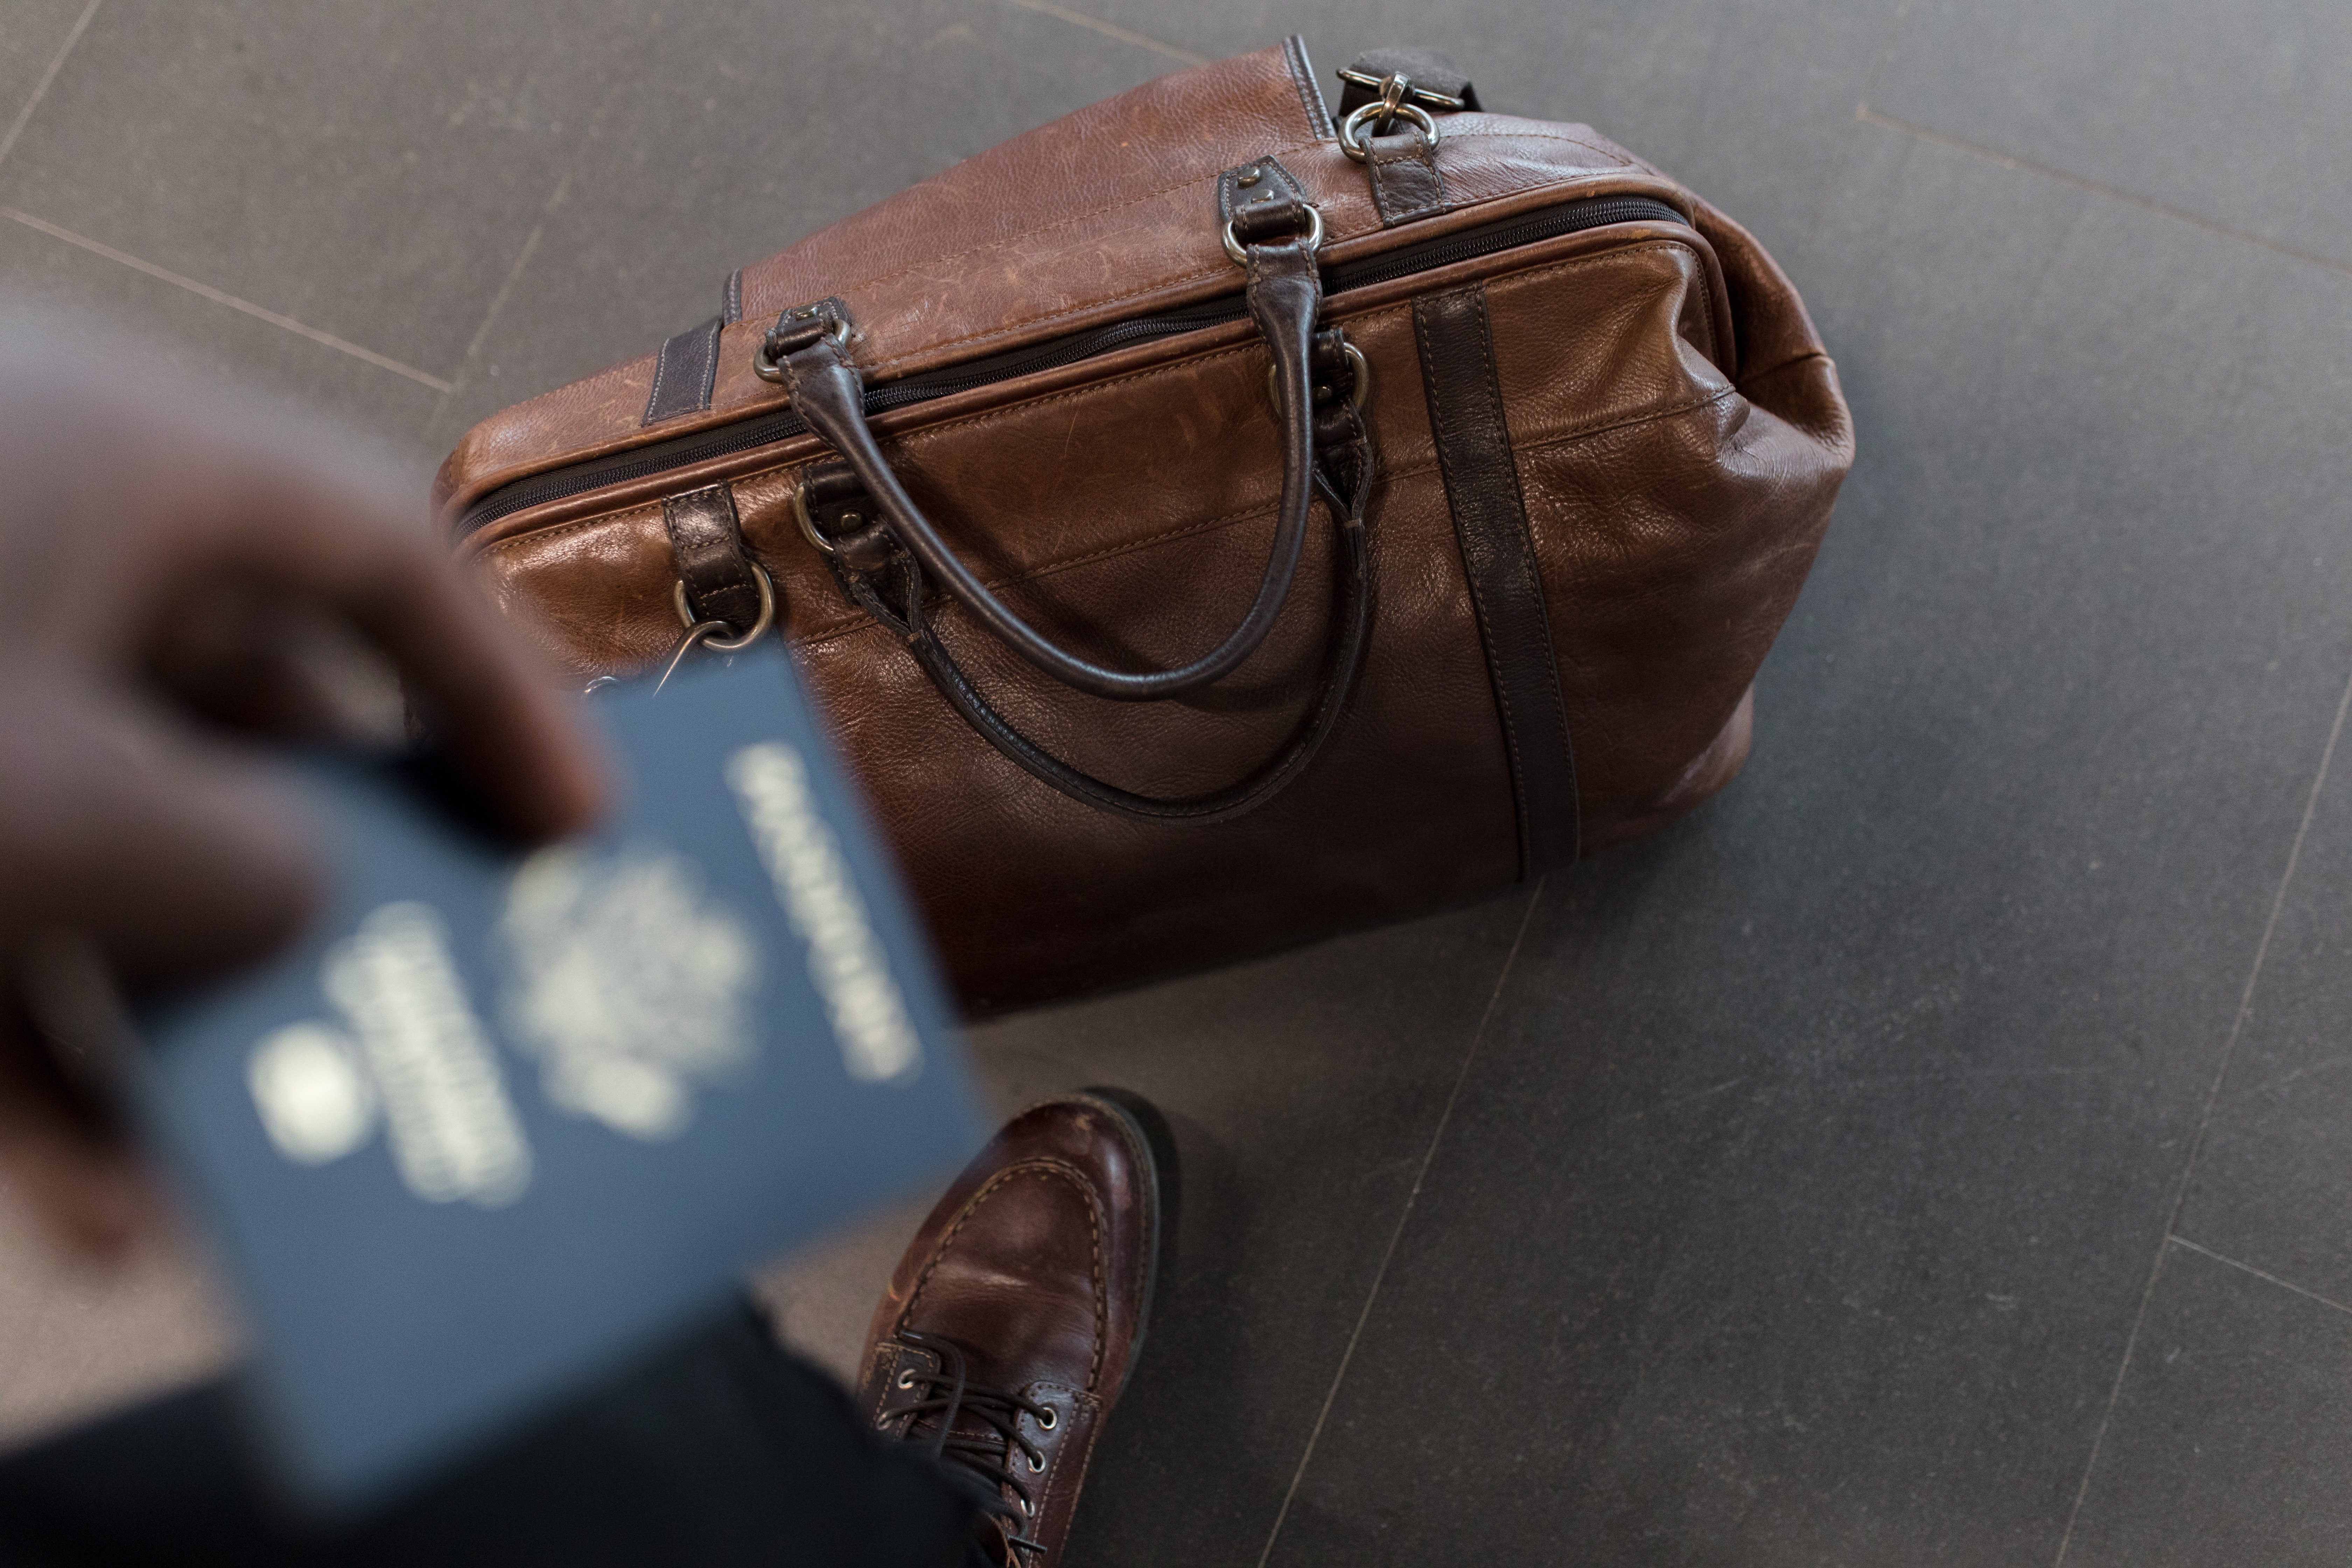 bag-on-floor-and-passport-in-hand